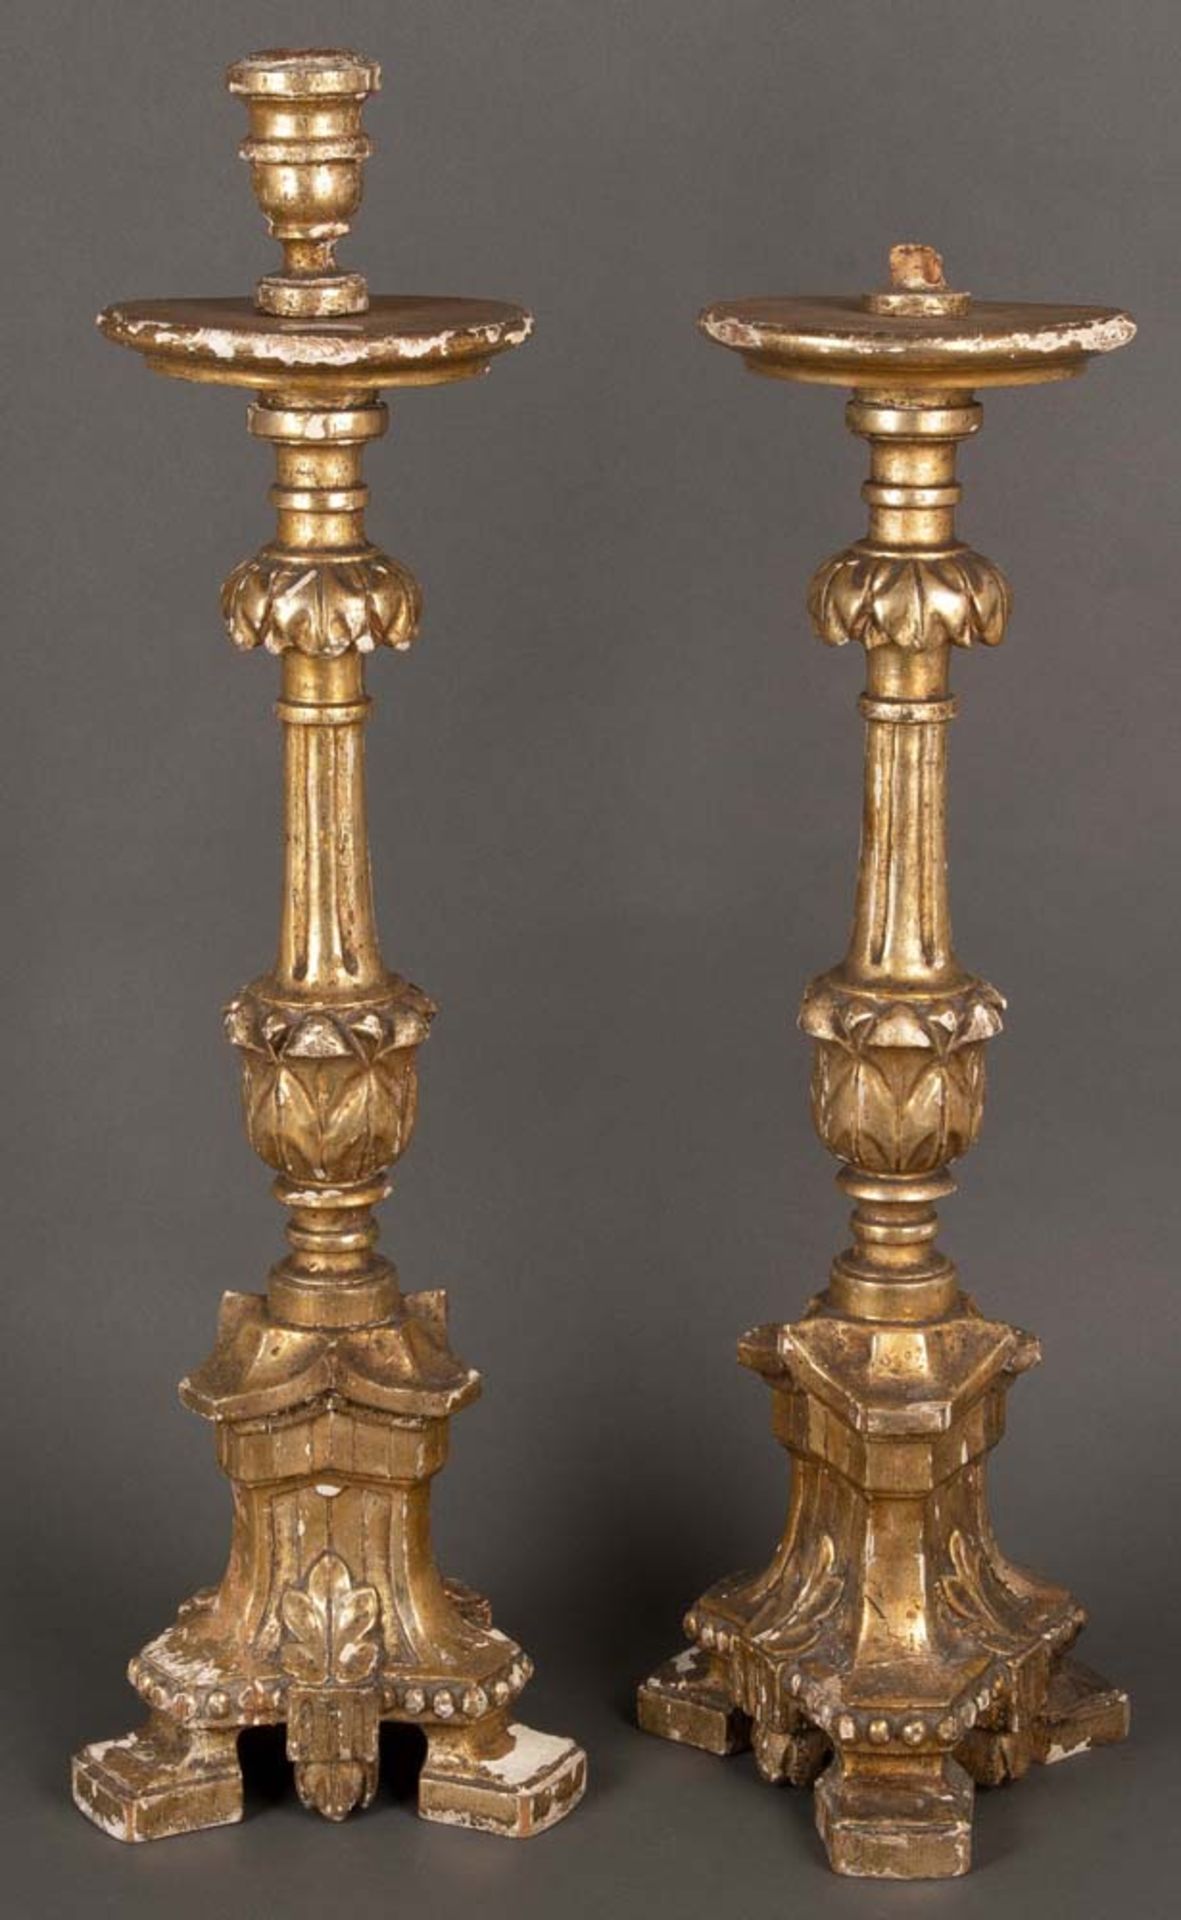 Paar Kerzenleuchter. Italien 19. Jh. Massivholz, geschnitzt, auf Kreidegrund vergoldet, H=62 bzw. 70